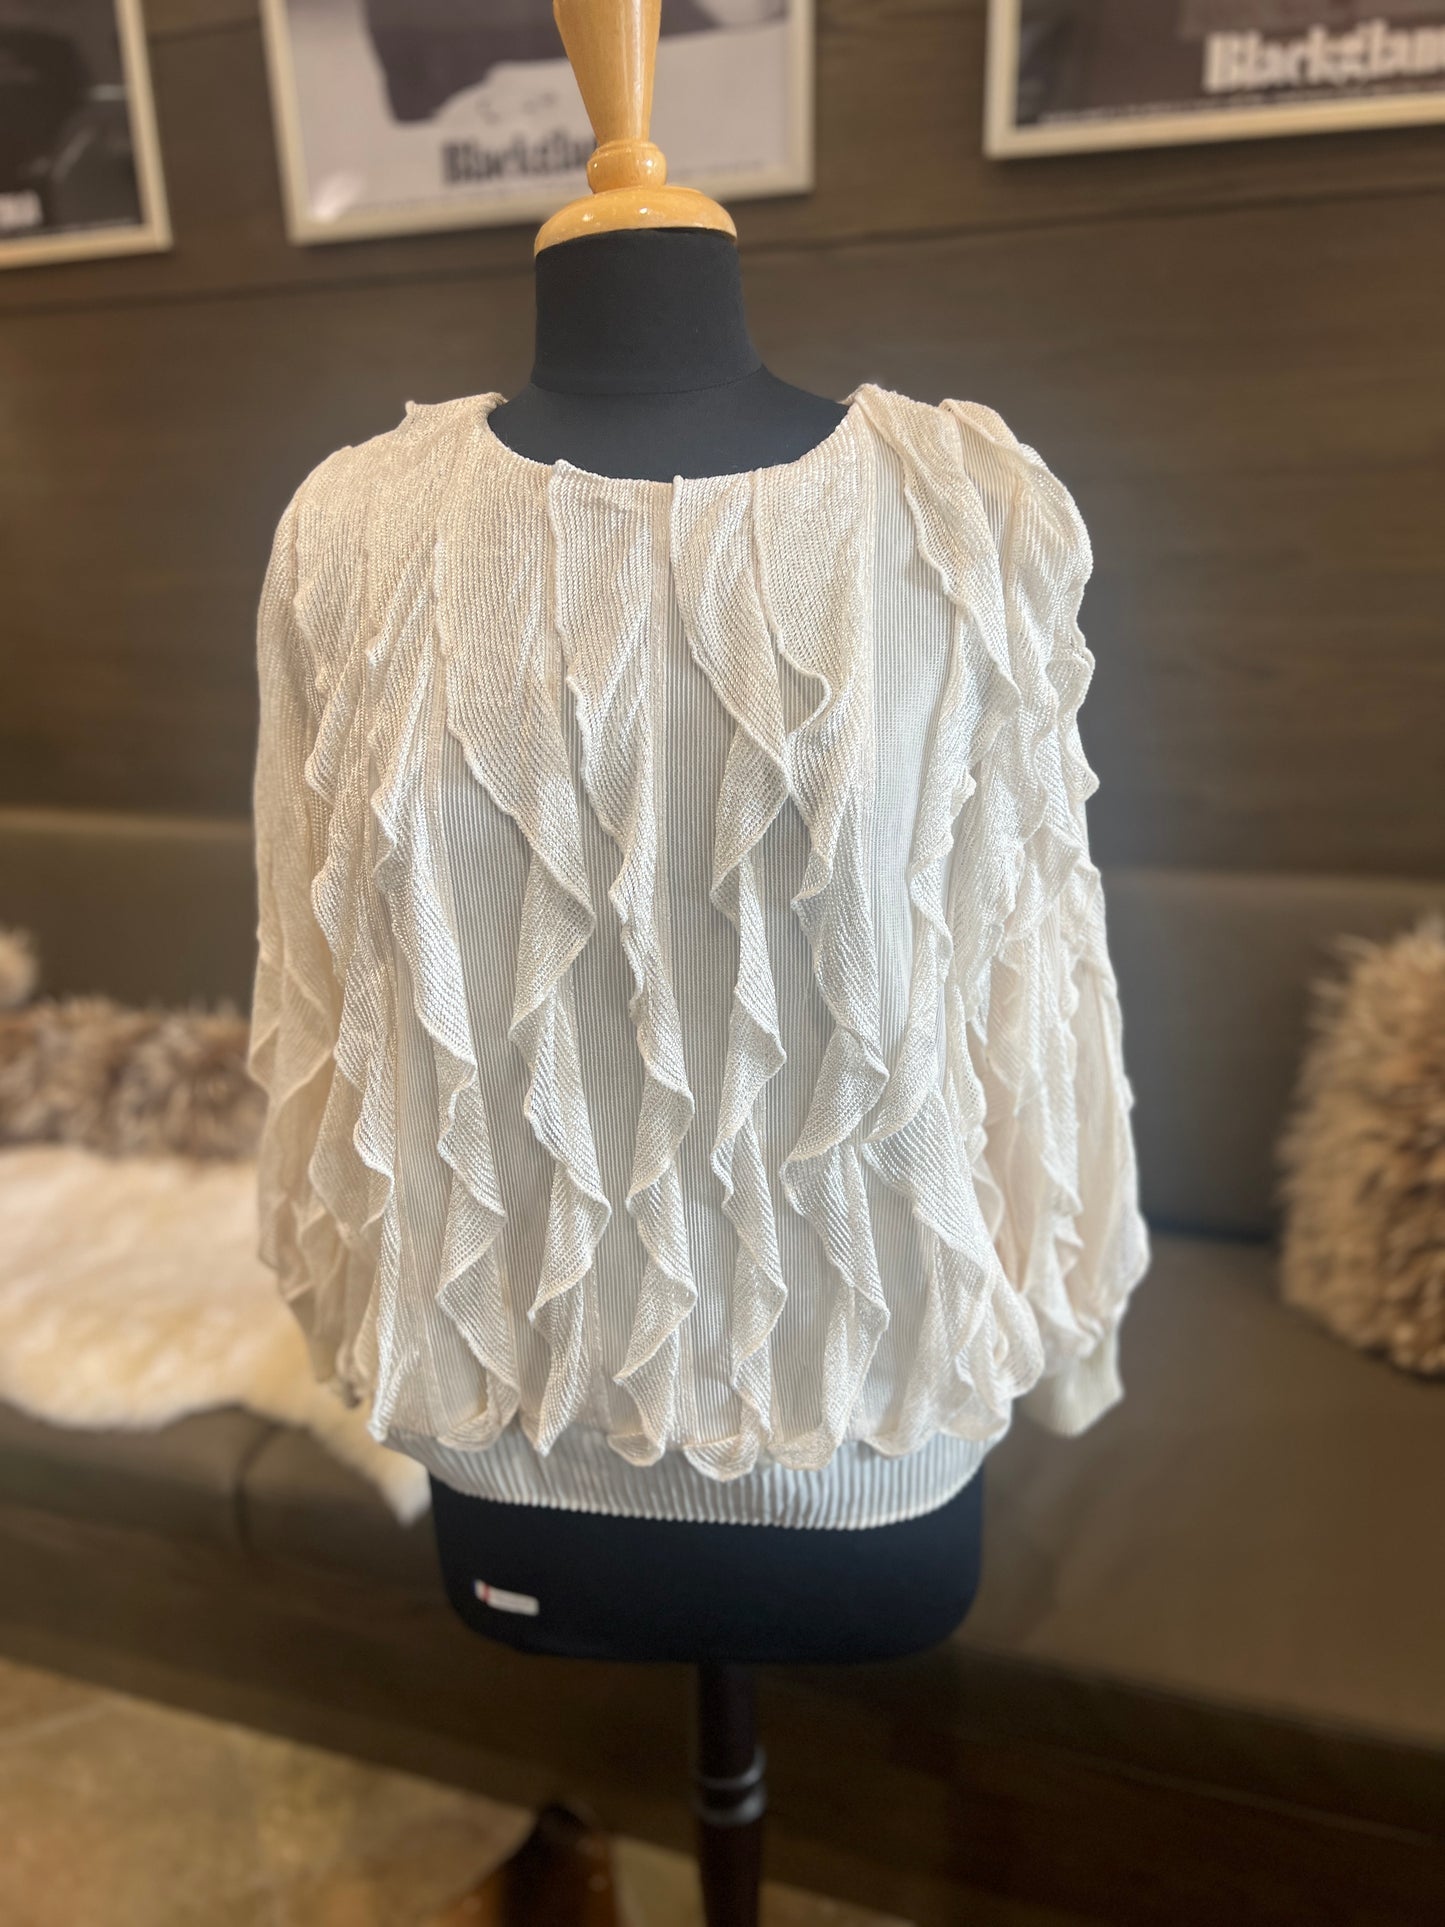 Joh Wynette Woven Ruffled Sweater Top